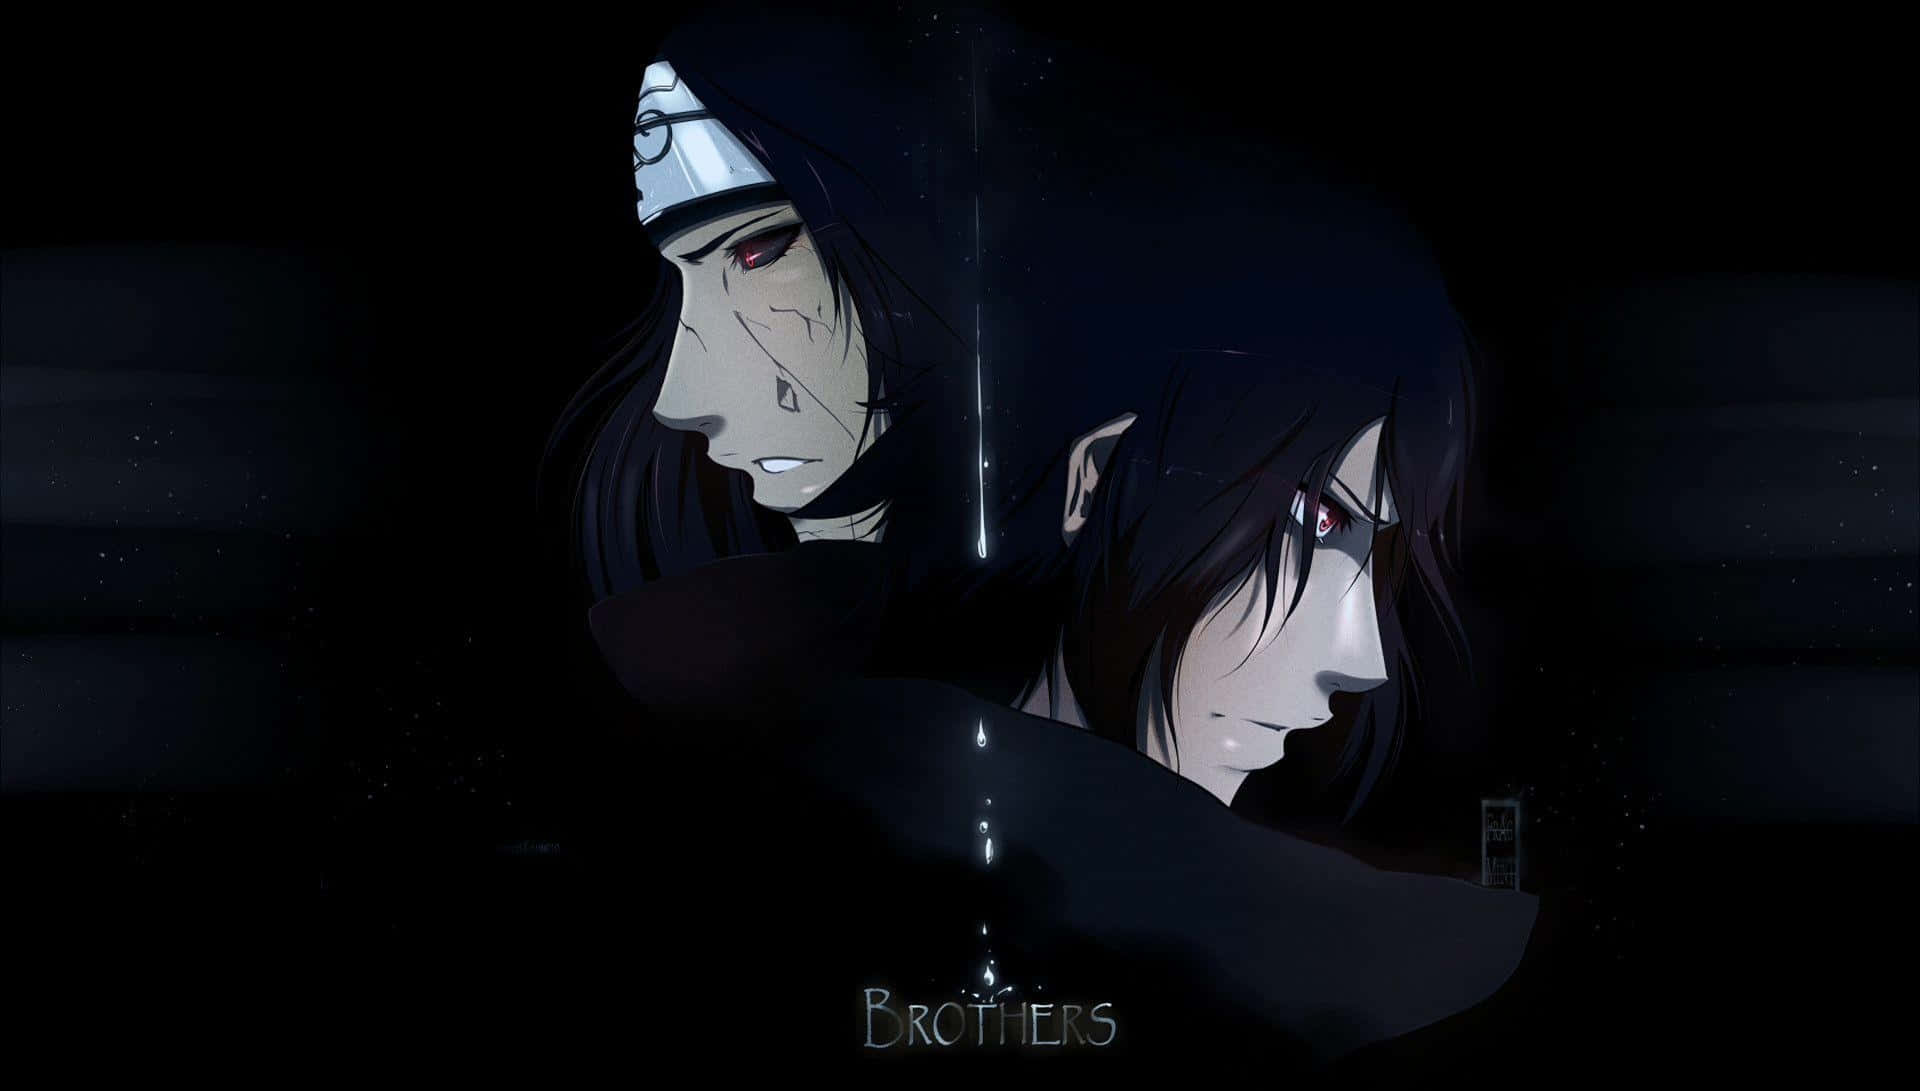 Itachiästhetisch Posiert Mit Bruder Sasuke Uchiha Auf Schwarzem Hintergrund. Wallpaper